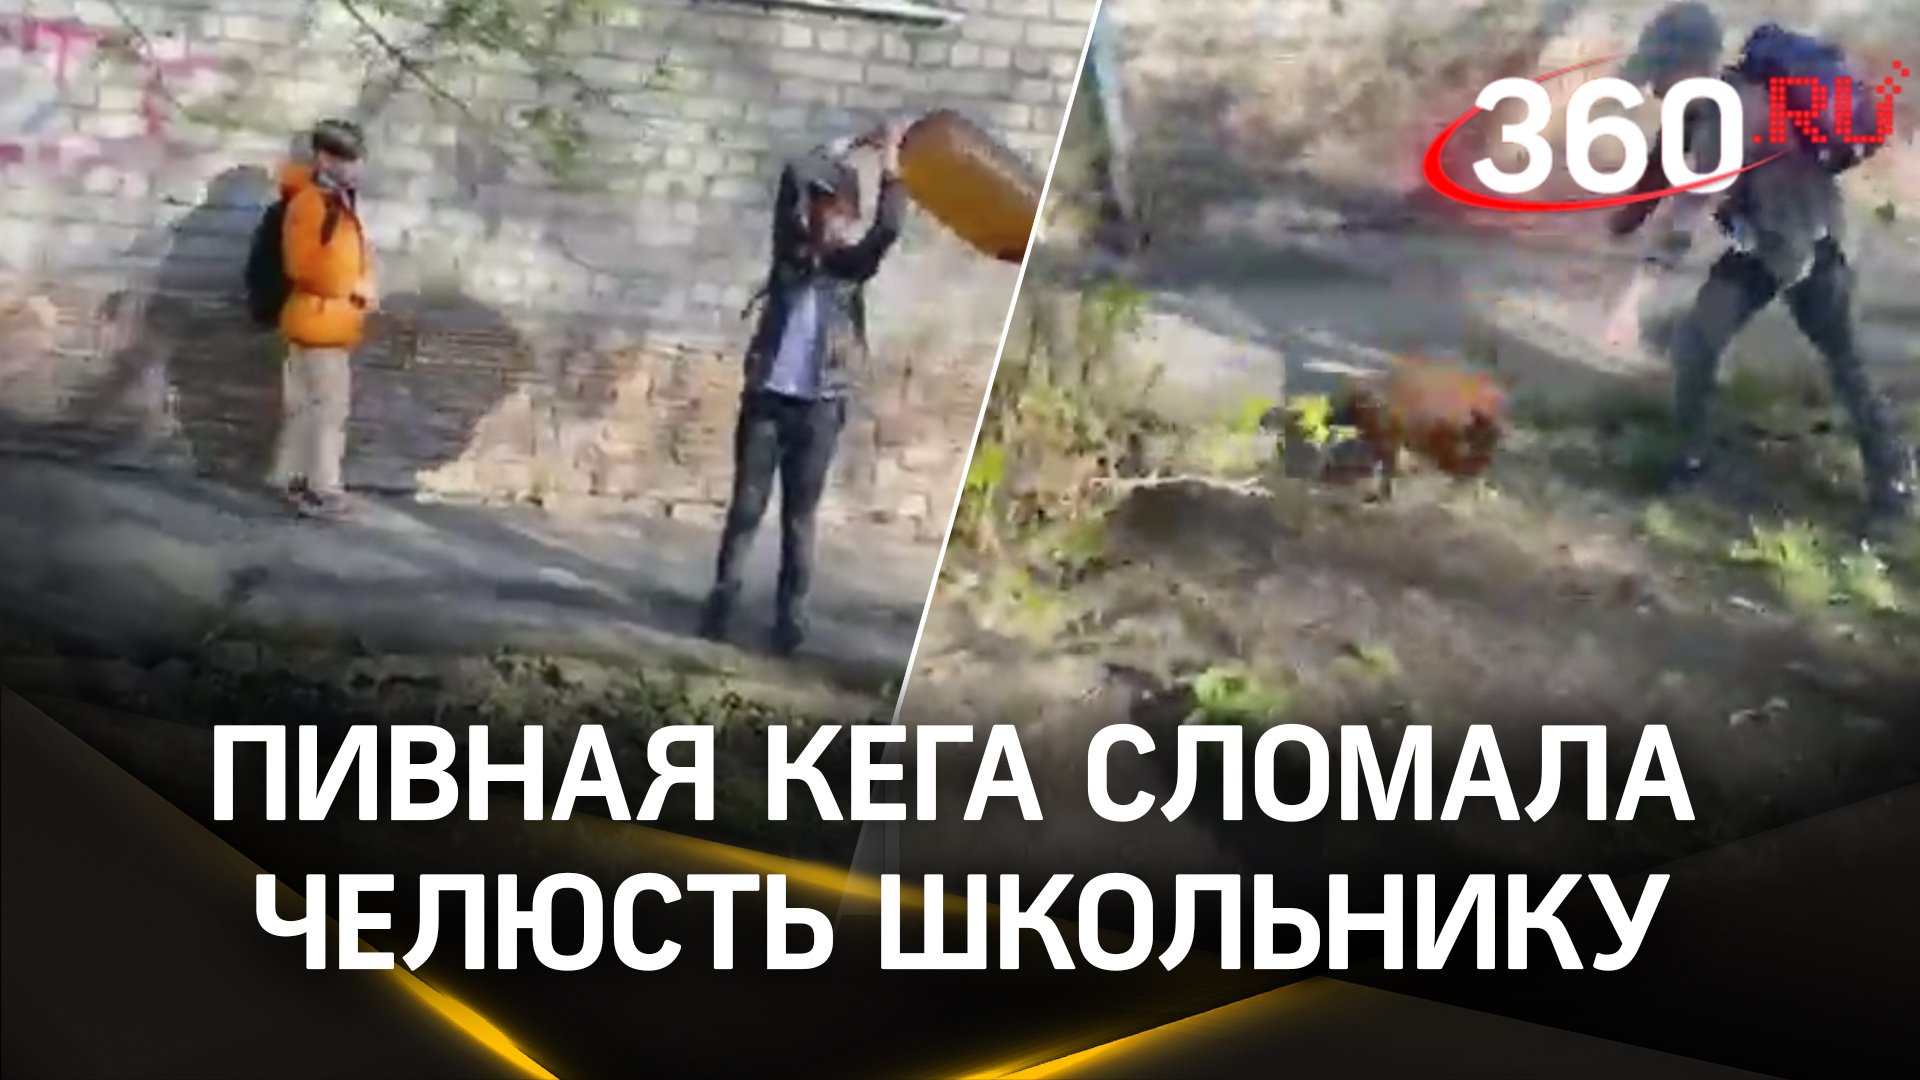 Видео: пивная кега сломала челюсть школьнику в Томске